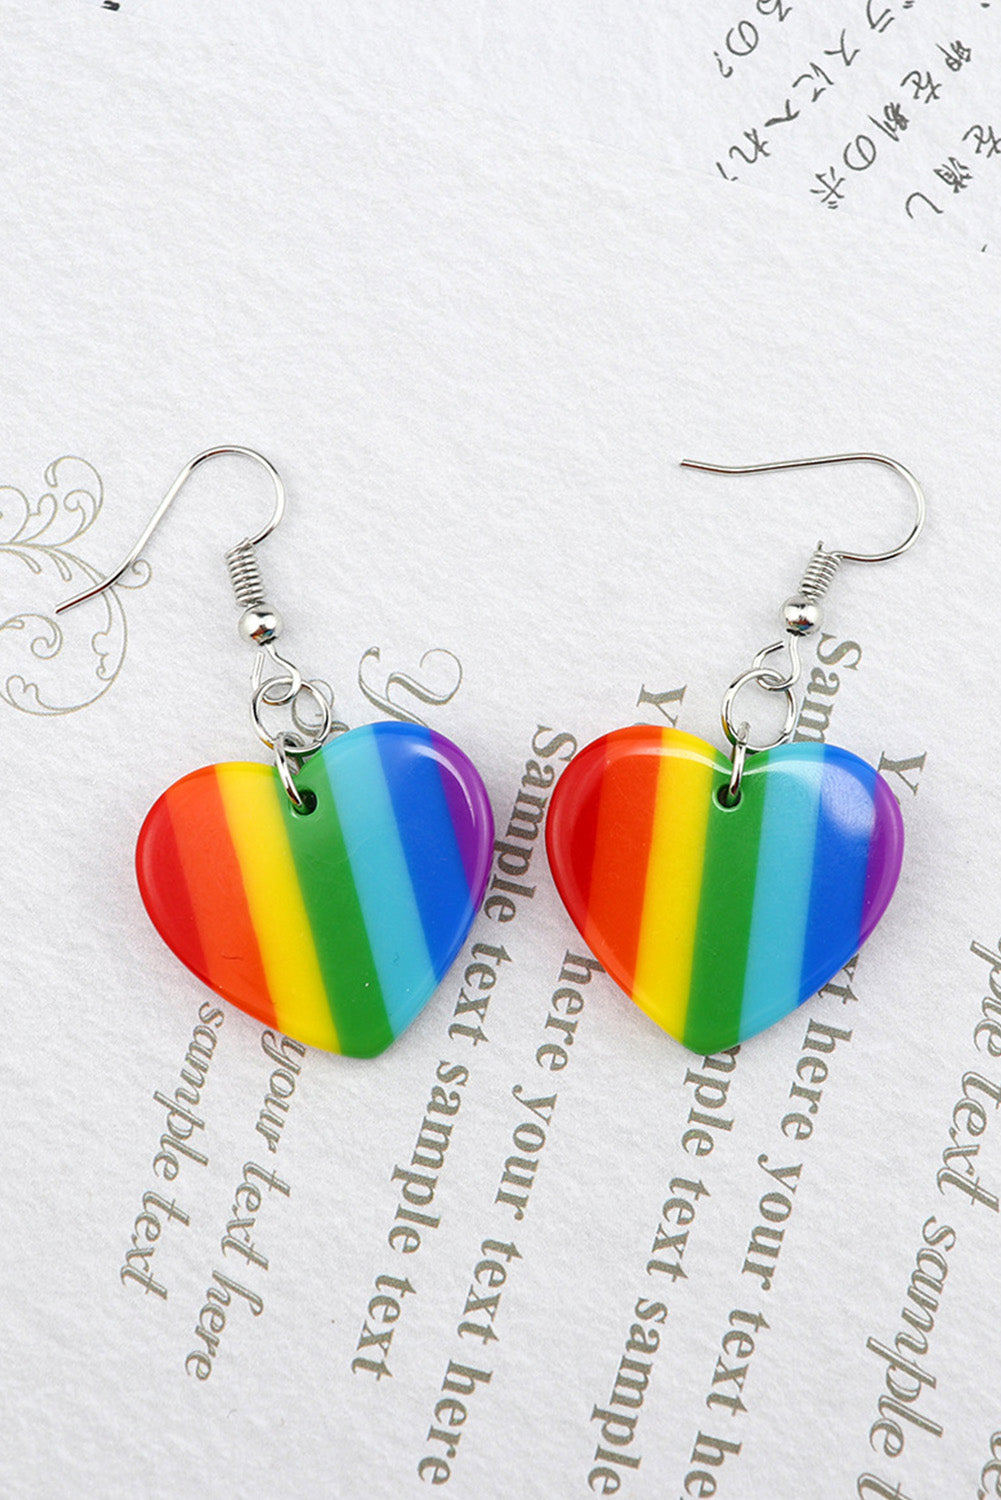 BH011017-22, Multicolor Heart Rainbow Earrings for Women Dangle Earrings Lesbian LGBT Pride Gifts